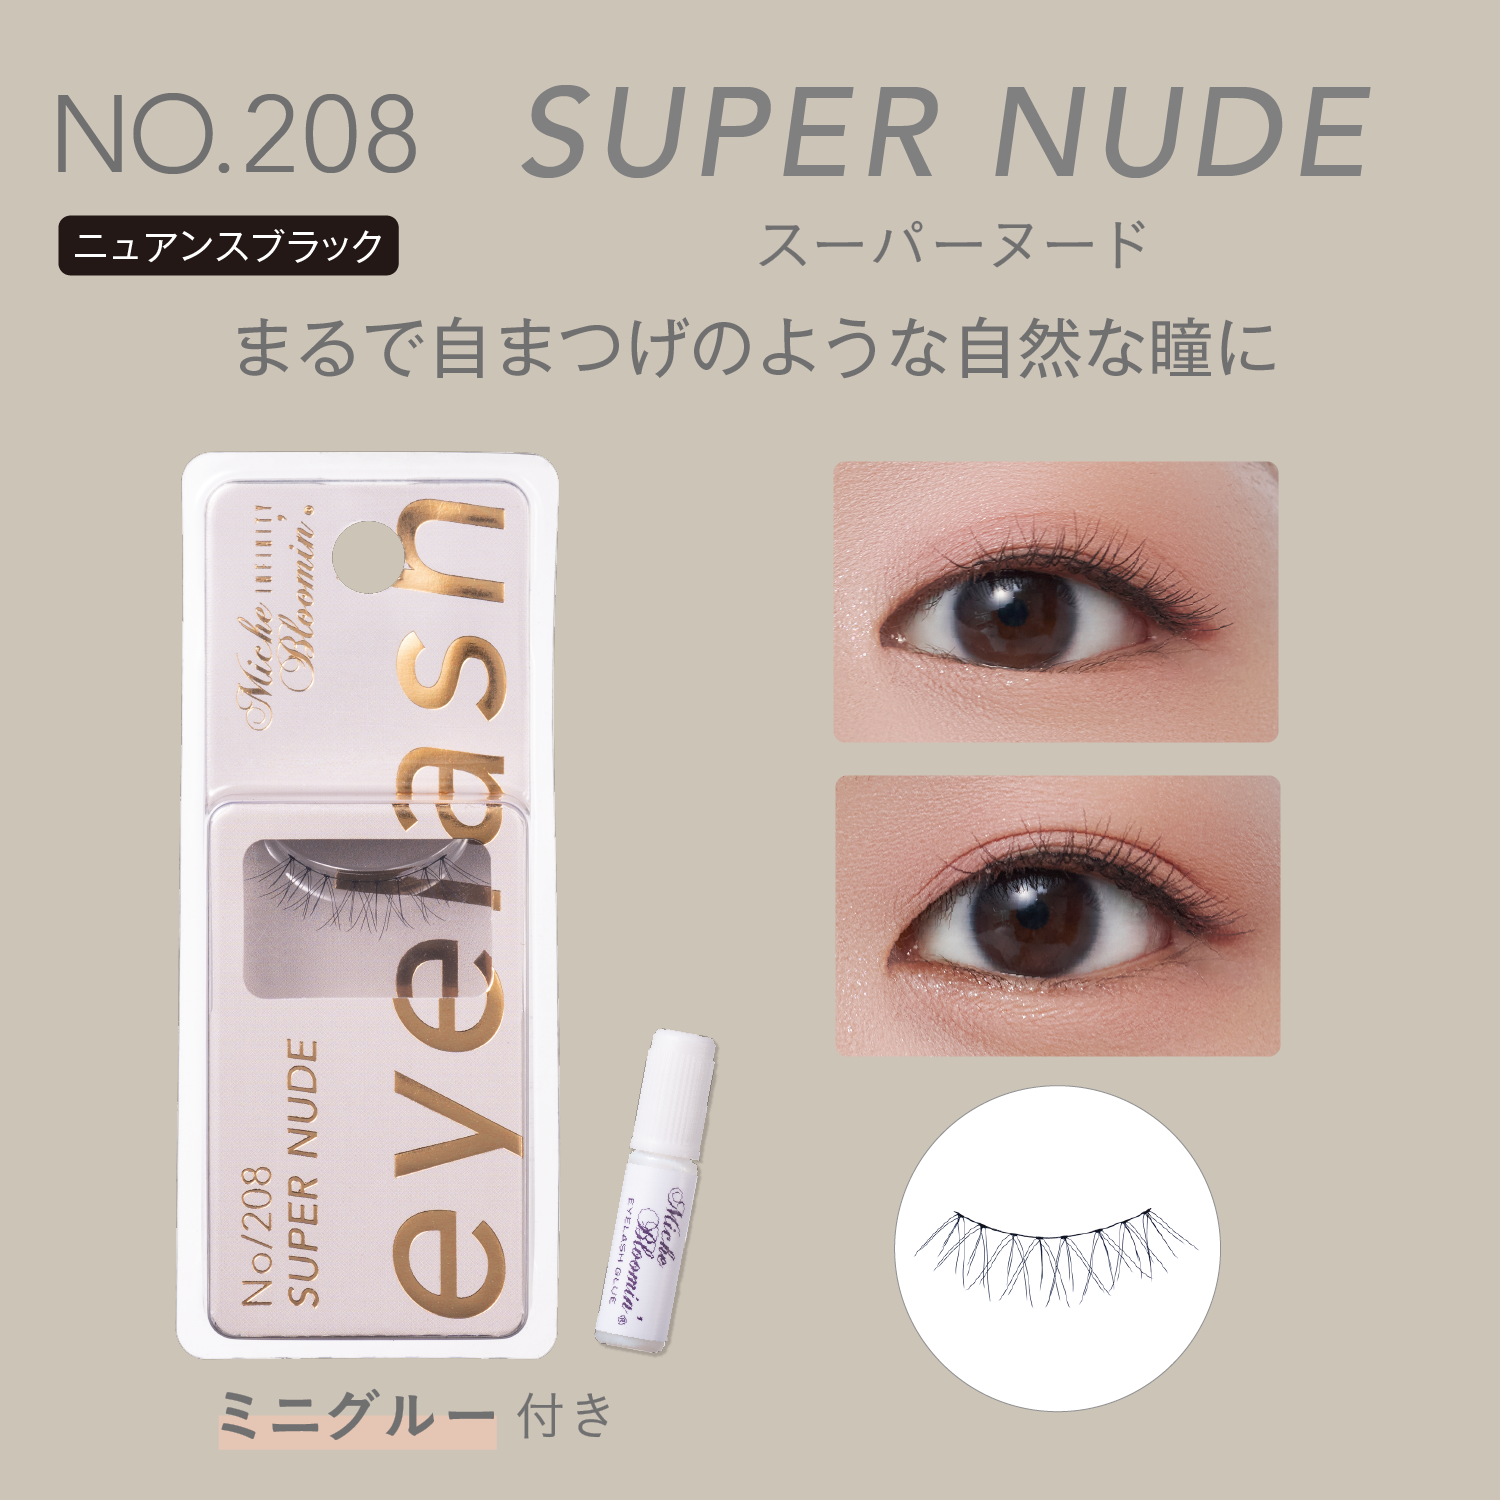 NO.208 Super nude